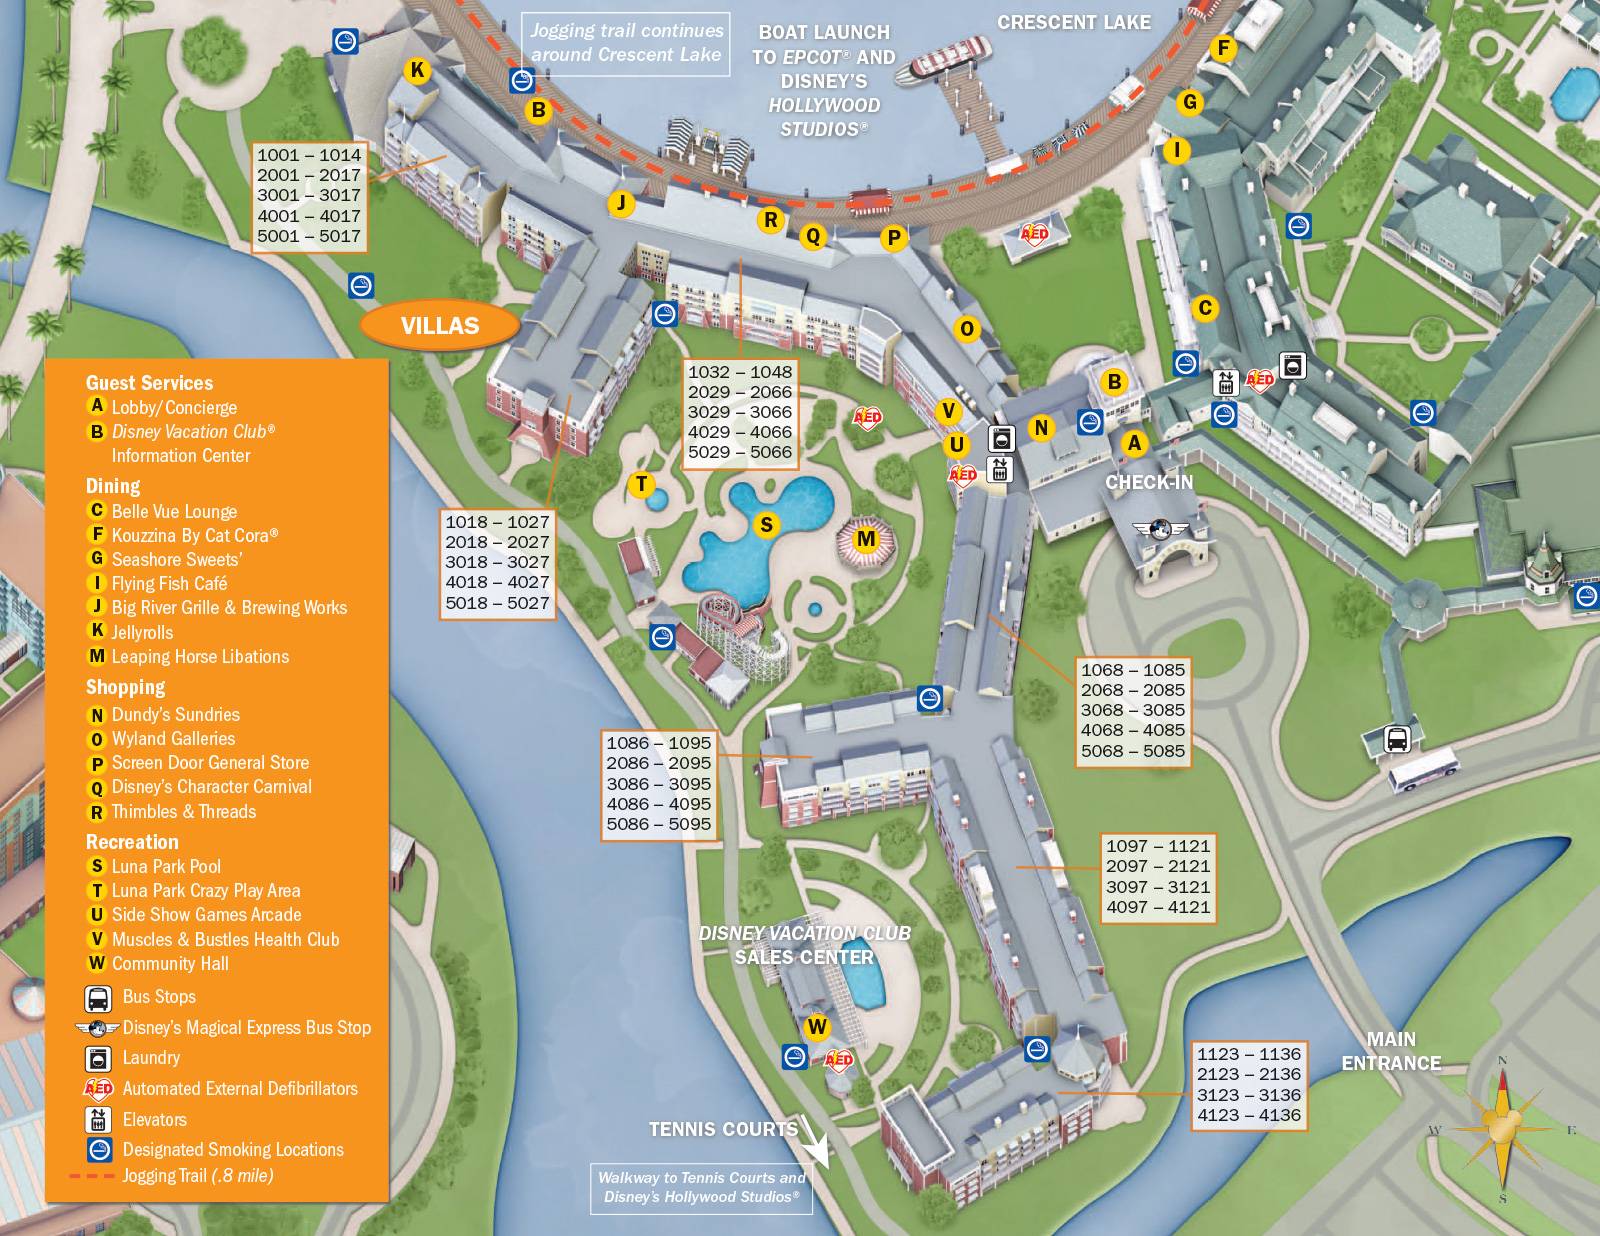 2013 BoardWalk Villas guide map